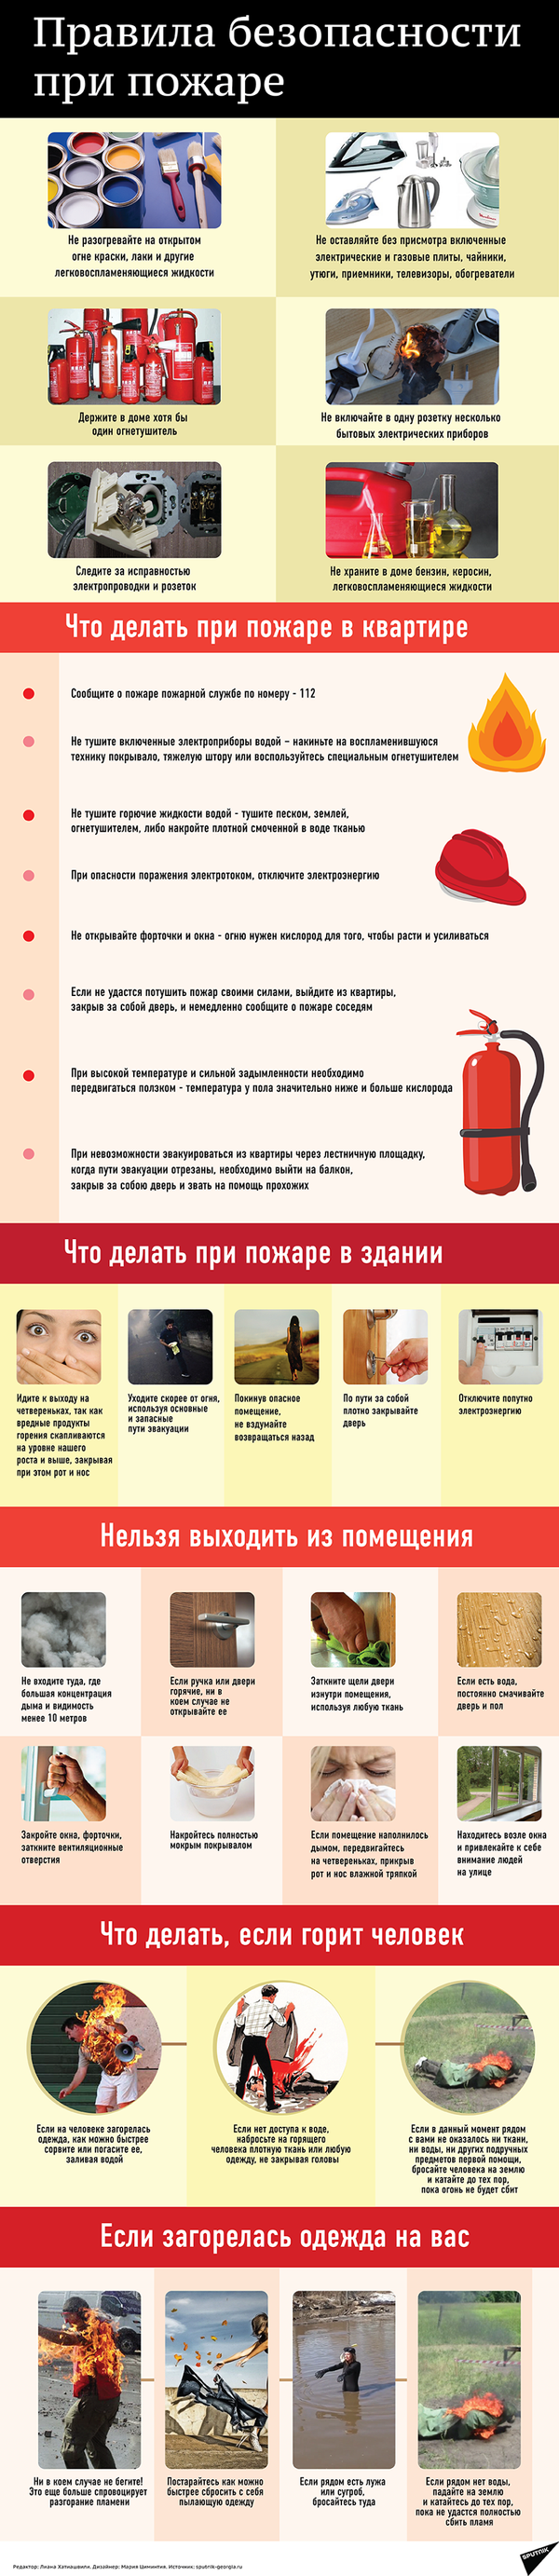 Правила безопасности при пожаре - Sputnik Азербайджан